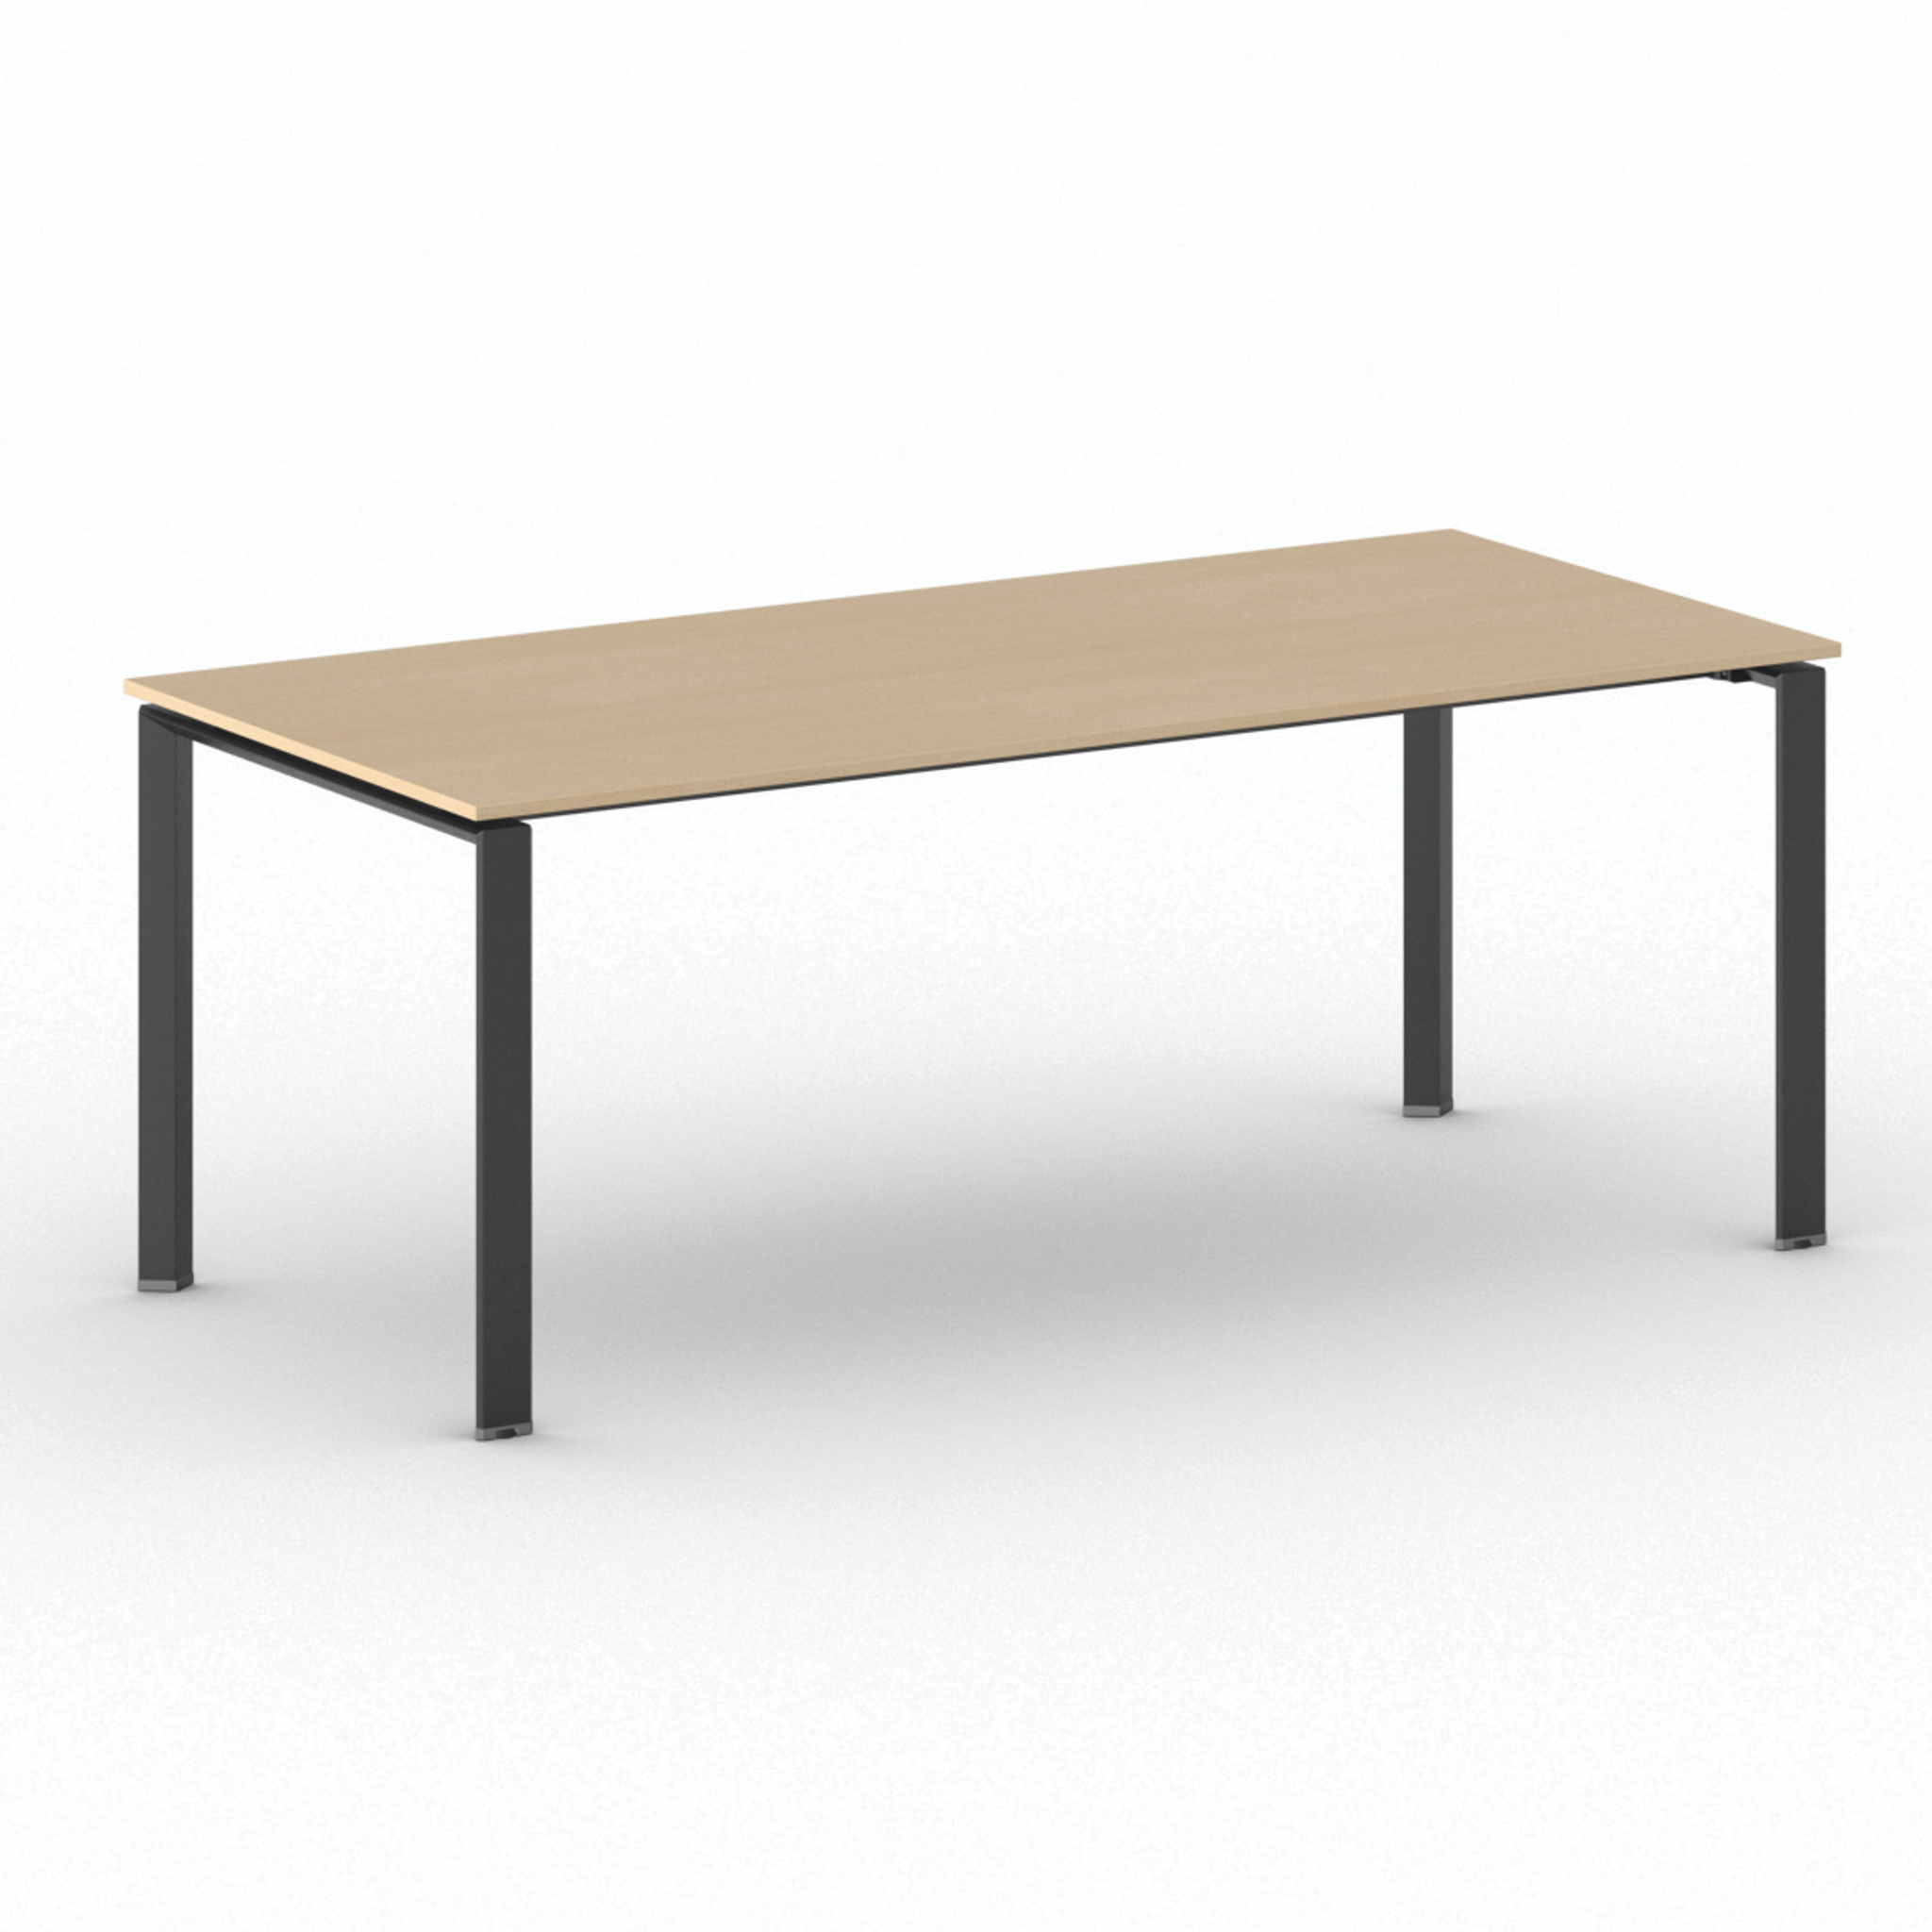 Konferenztisch, Besprechungstisch INFINITY 200x90 cm, Buche, schwarzes Fußgestell